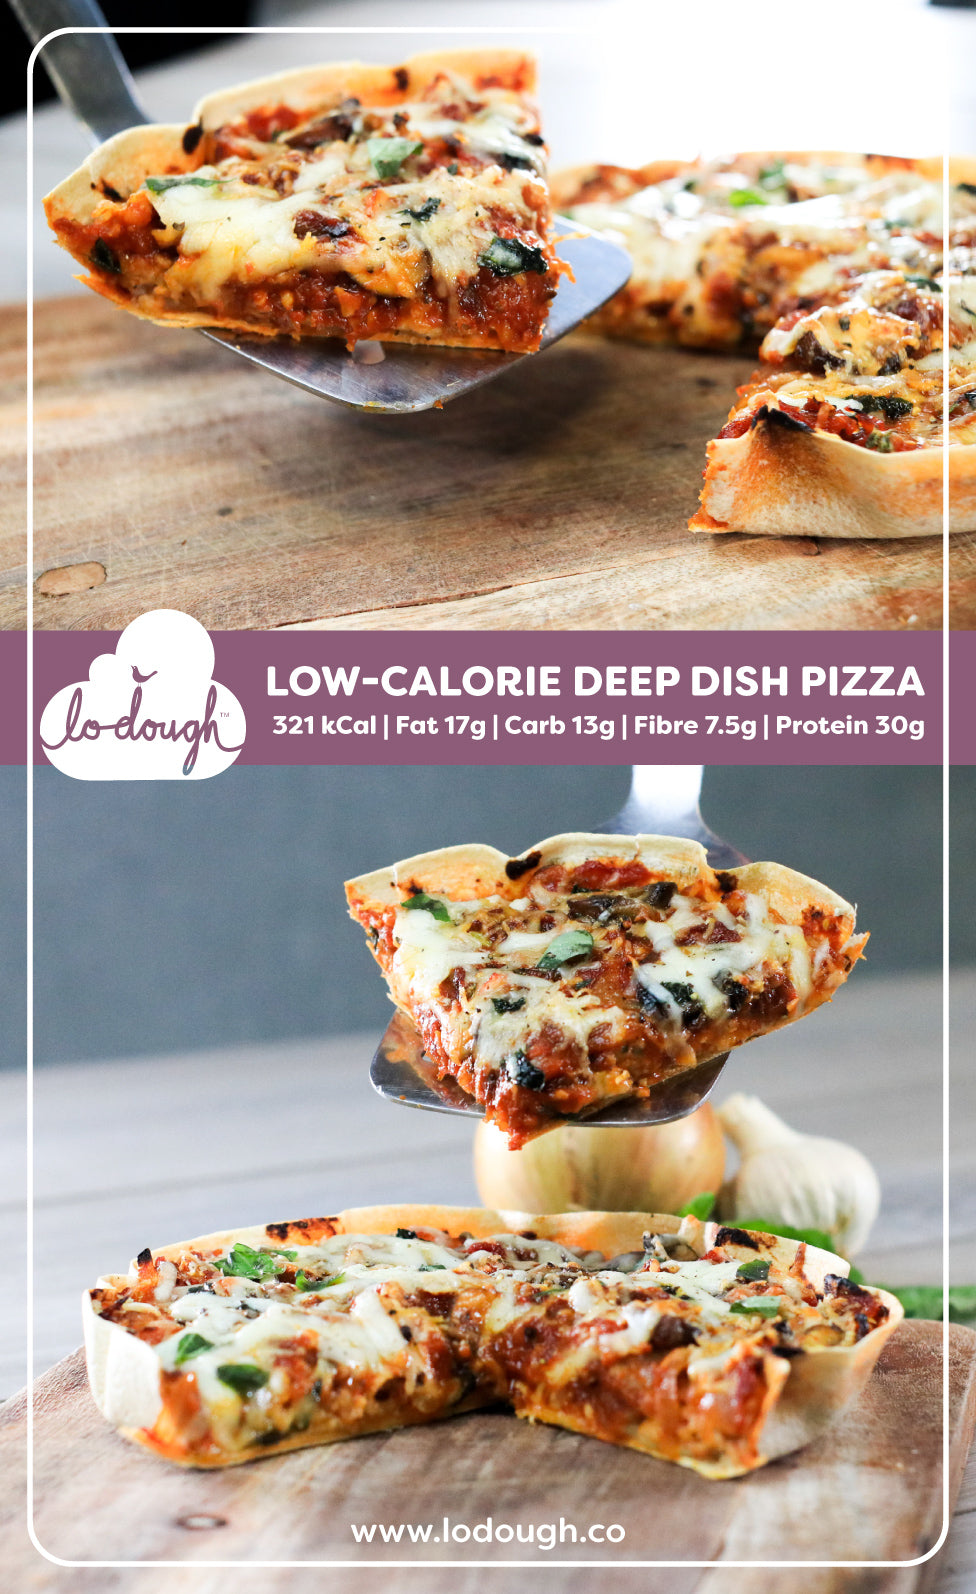 Low-Calorie Deep Dish Pizza